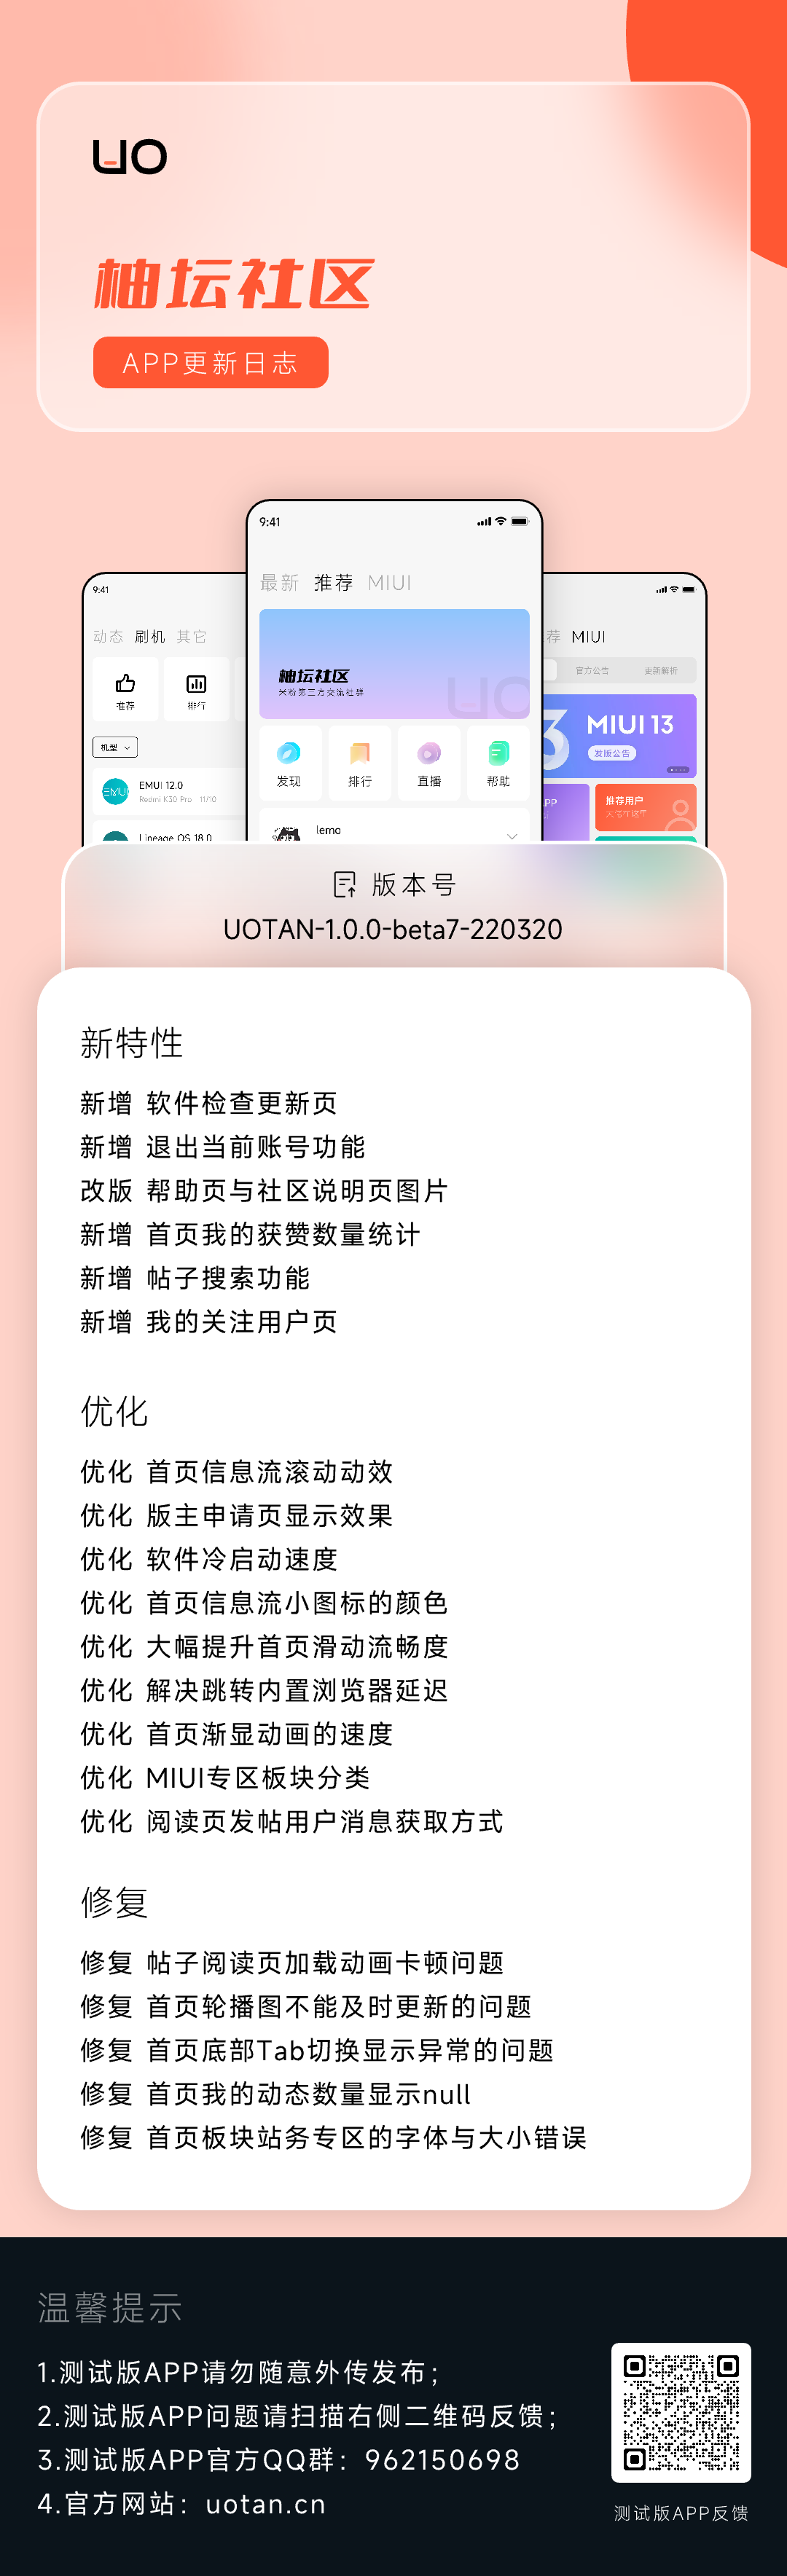 APP更新日志UOTAN-1.0.0-beta7-220320.png